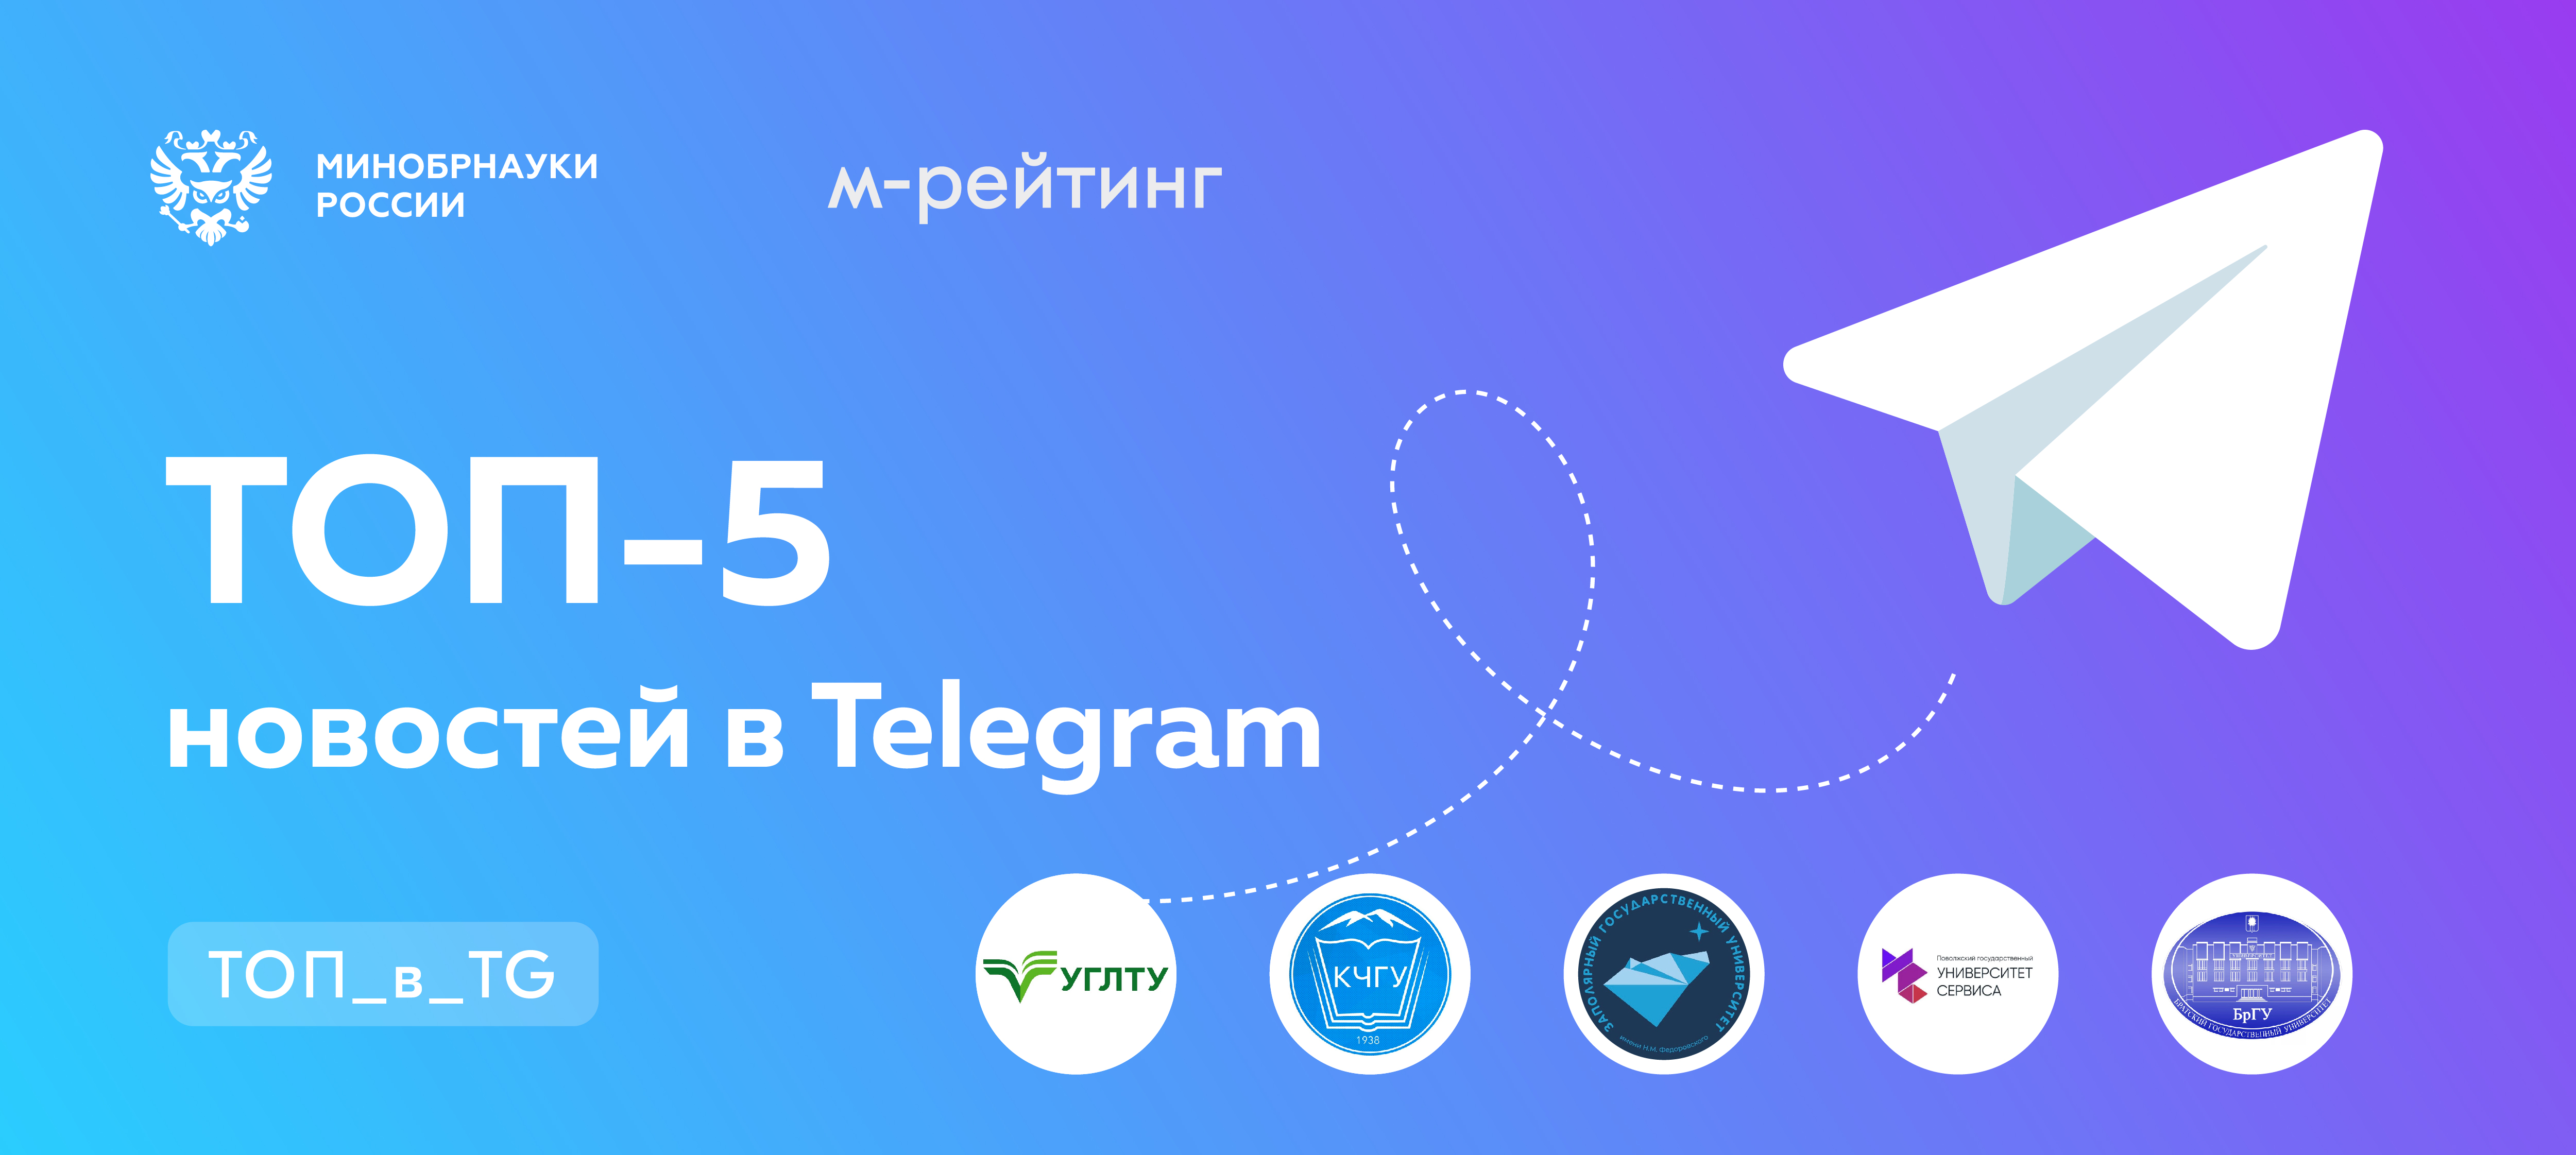 Сайт телеграмм официальный сайт зарегистрироваться на русском фото 37